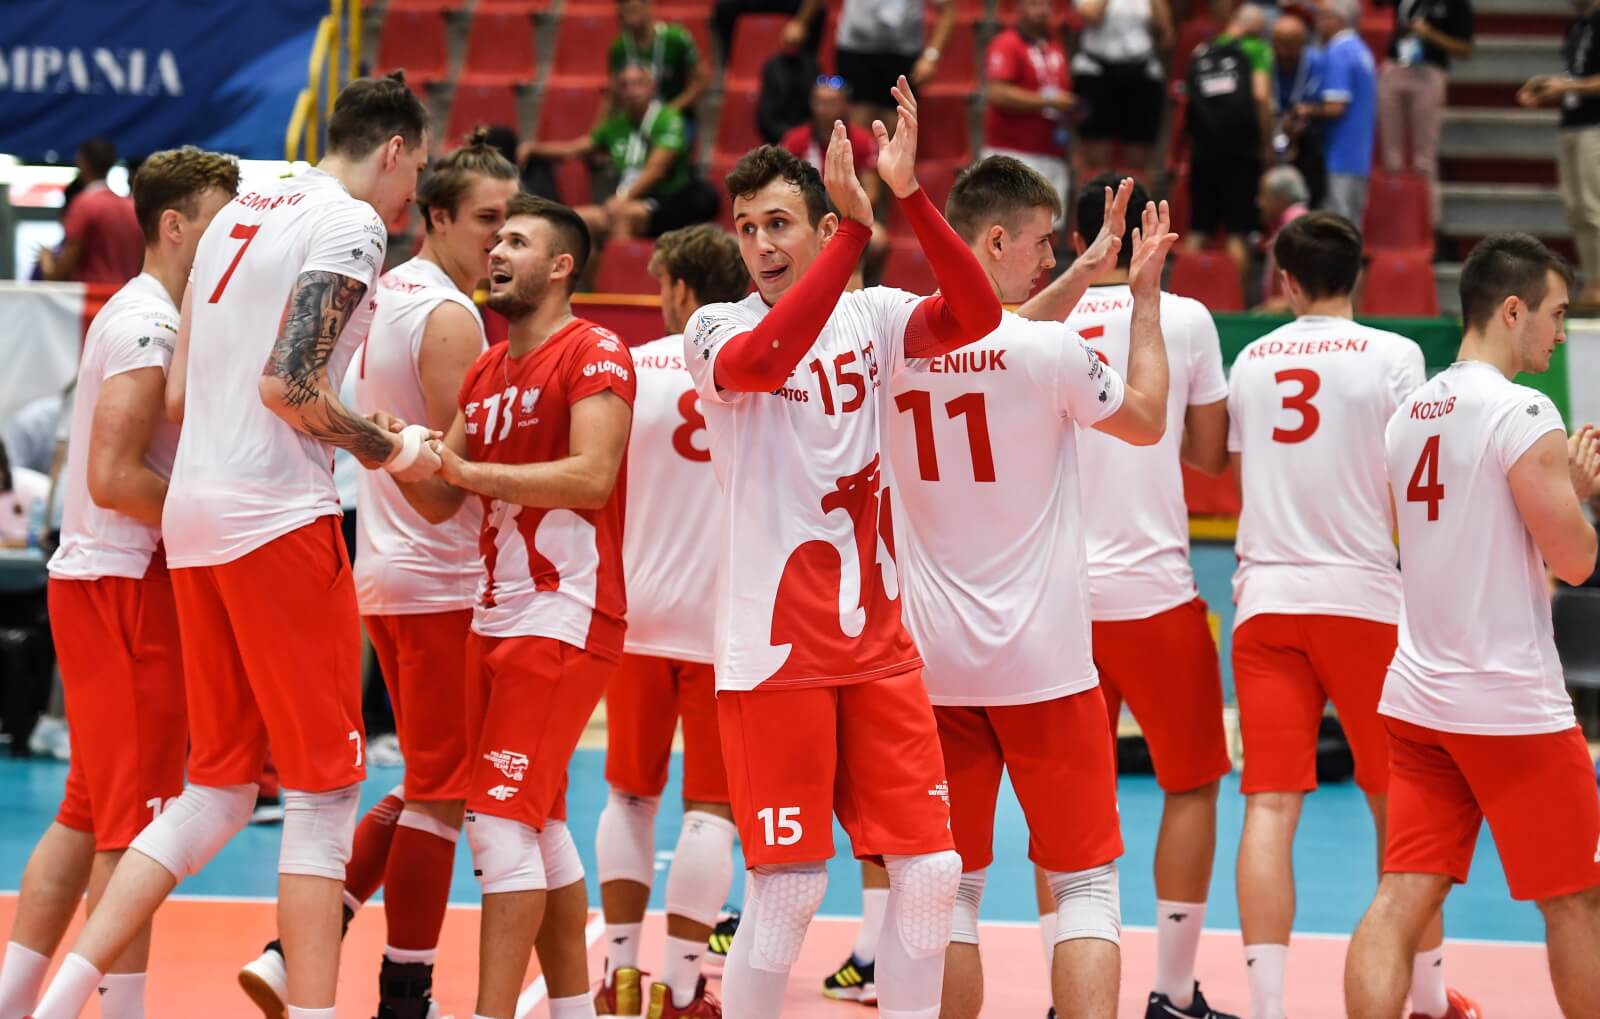 Polscy siatkarze cieszą się z wygranego 3:0 meczu z reprezntacją Brazylii PAP/Paweł Skraba